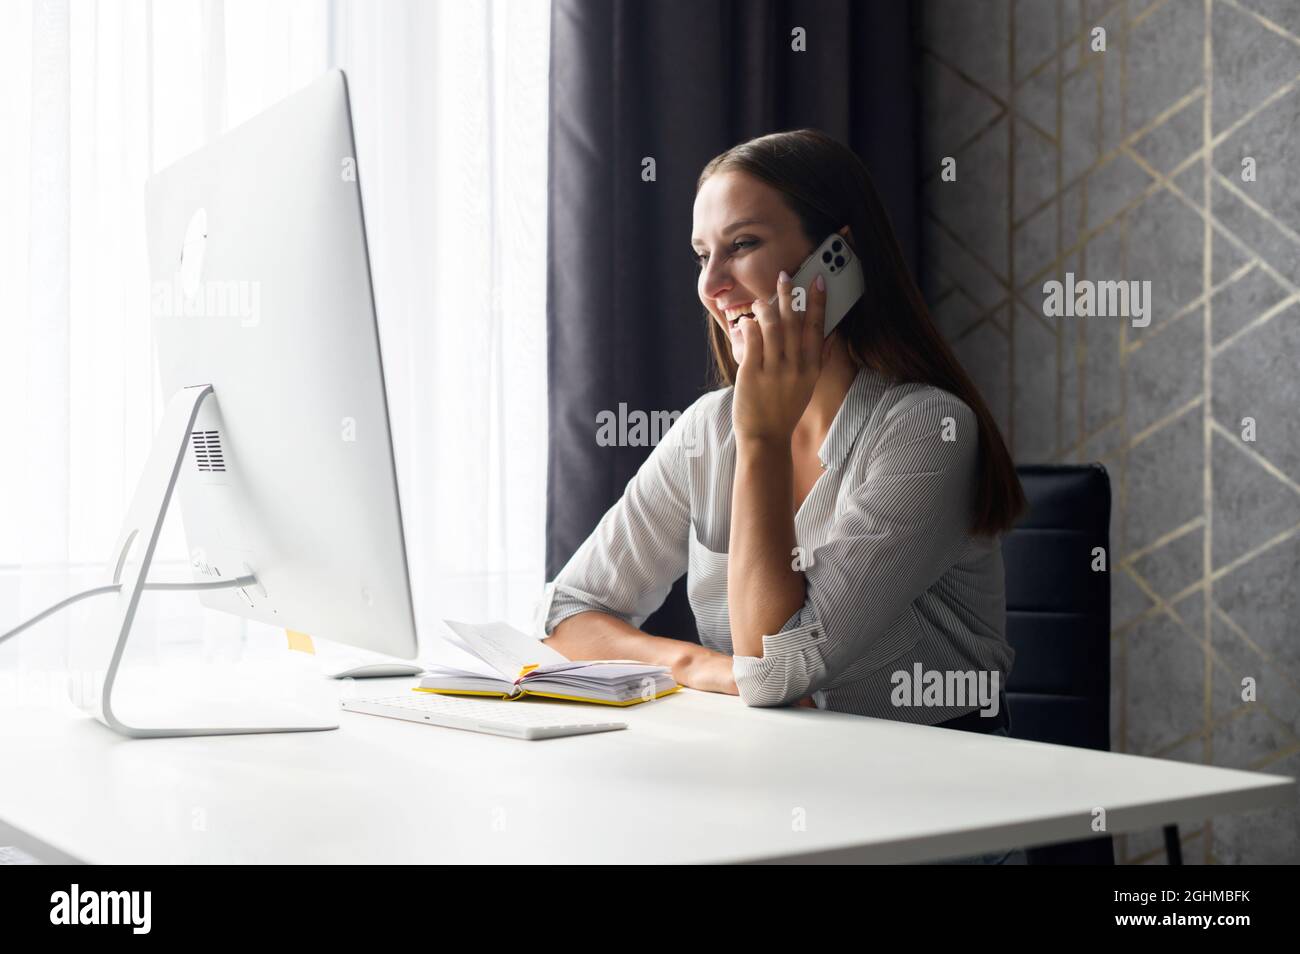 Eine charmante junge Frau telefoniert, eine Geschäftsfrau sitzt entspannt am Schreibtisch vor einem trendigen Computer, lacht und chattet auf dem Smartphone, während sie eine Pause vom Fernarbeiten macht Stockfoto